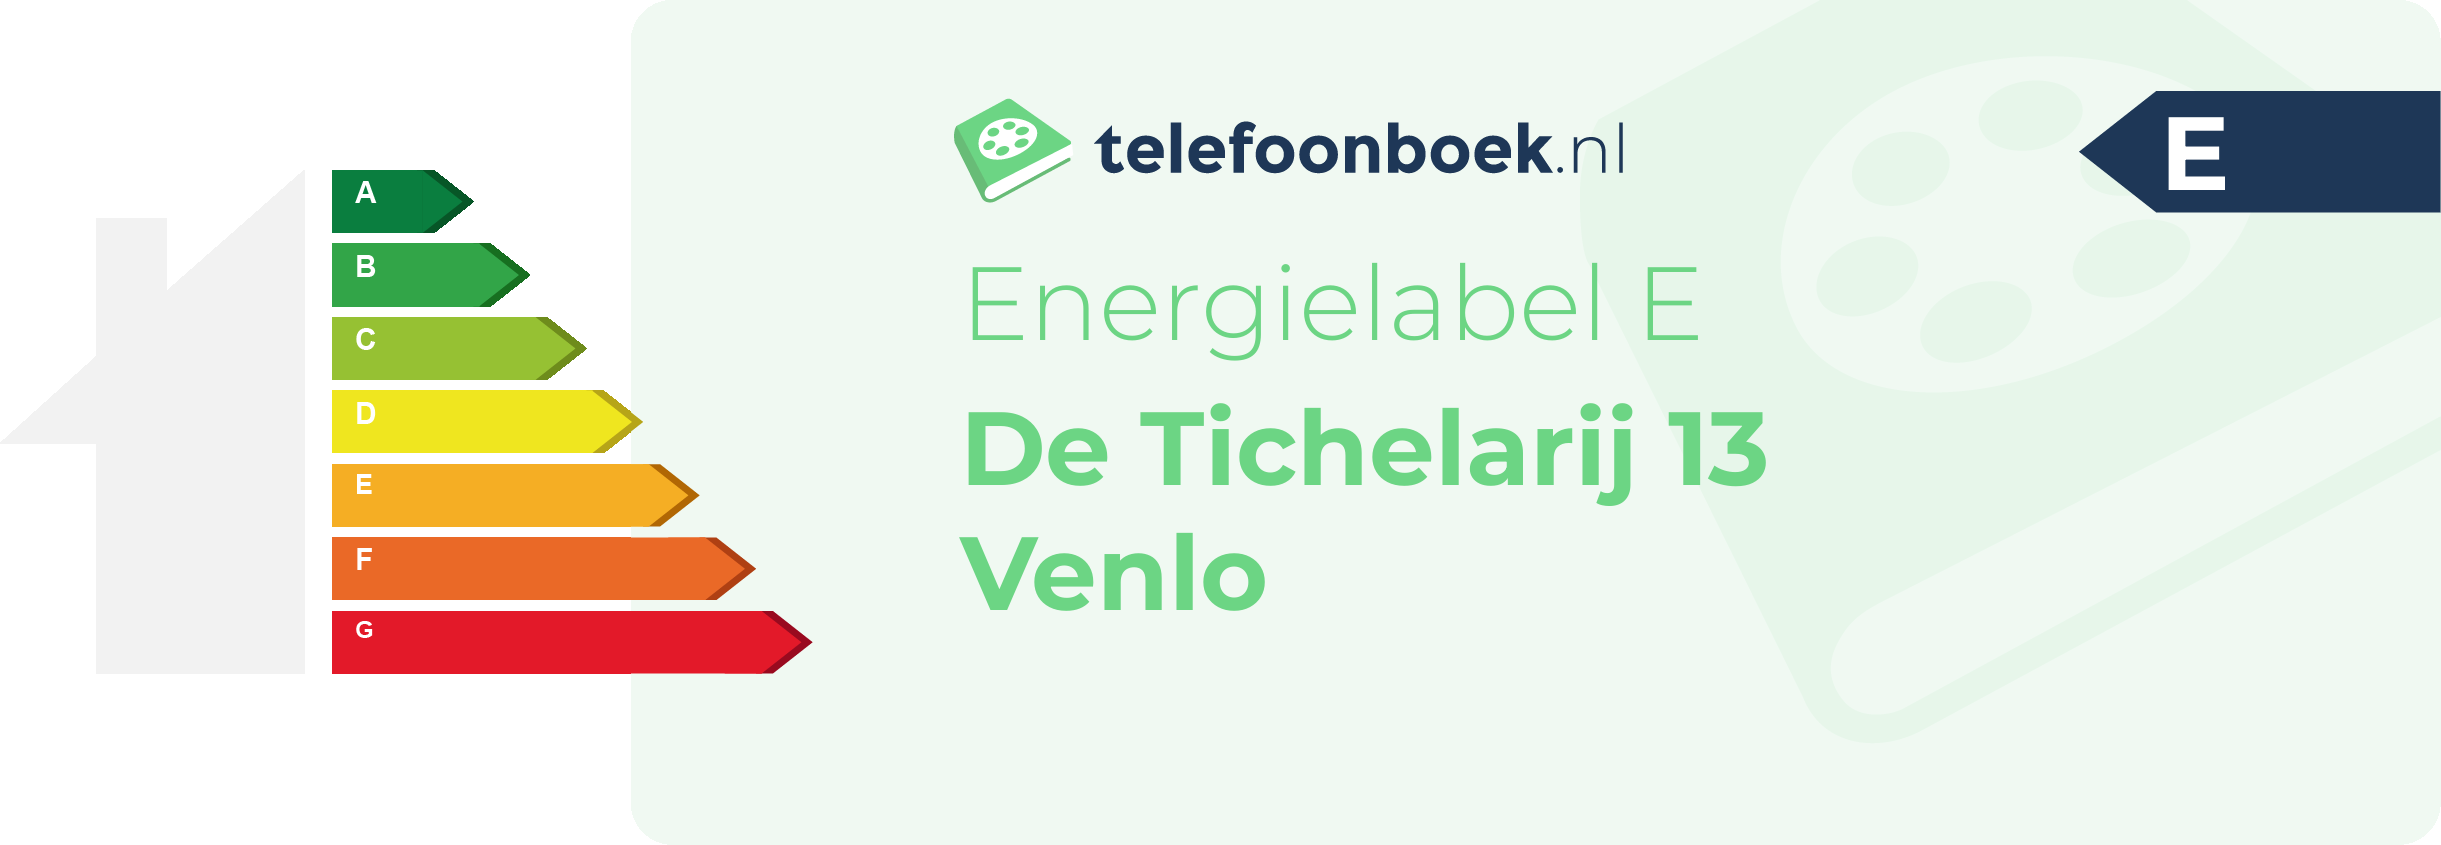 Energielabel De Tichelarij 13 Venlo